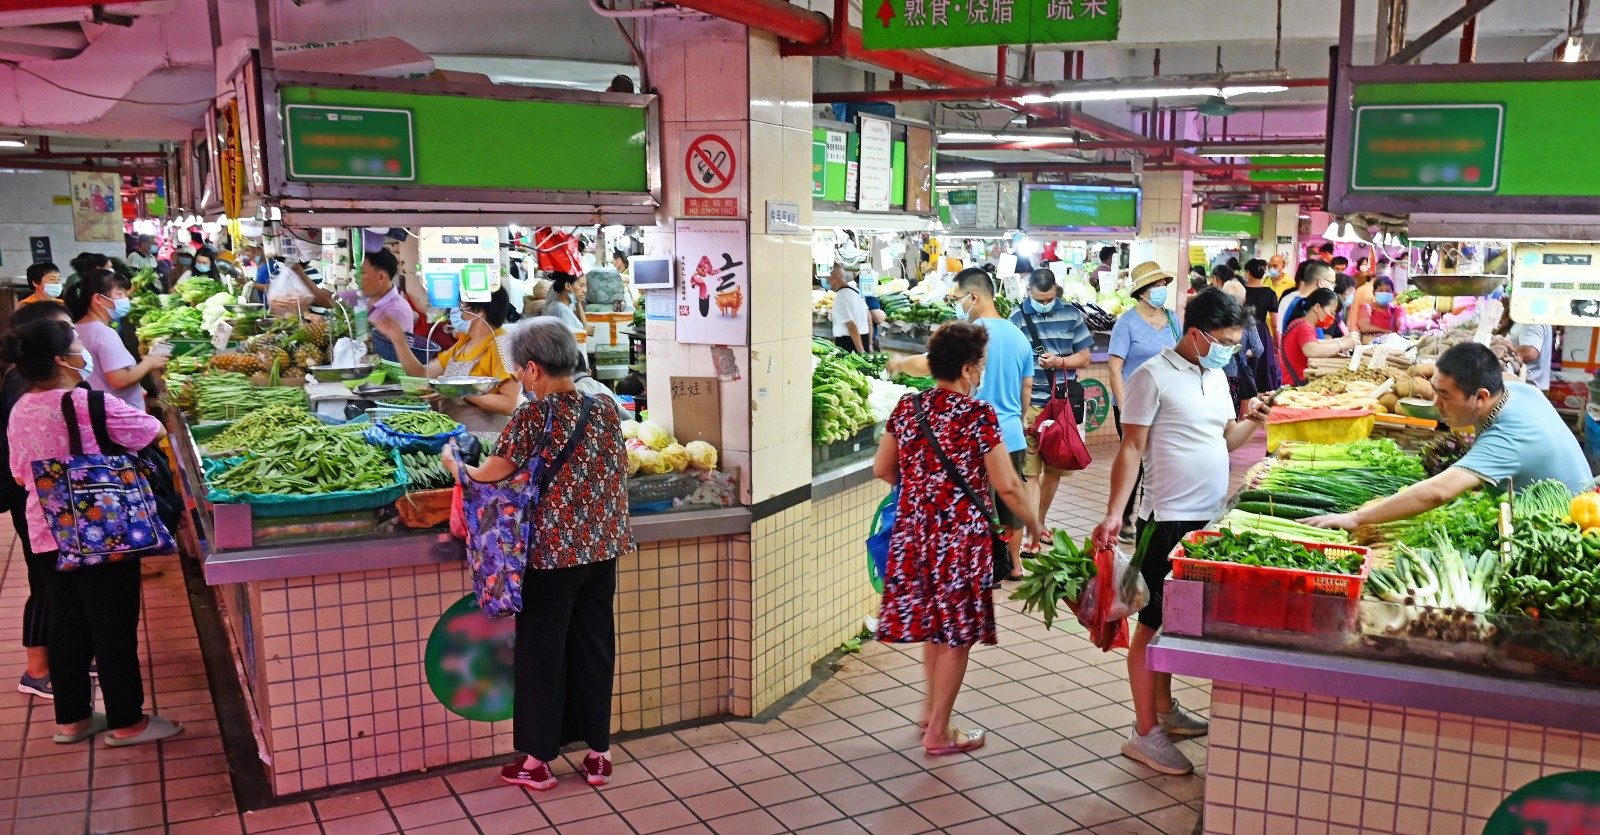 1 广州天河员村市场位于居民区内，这里肉类海鲜品种齐全，蔬菜瓜果琳琅满目，不少街坊慕名前来买菜。（摄影：何小茹）aa.jpg